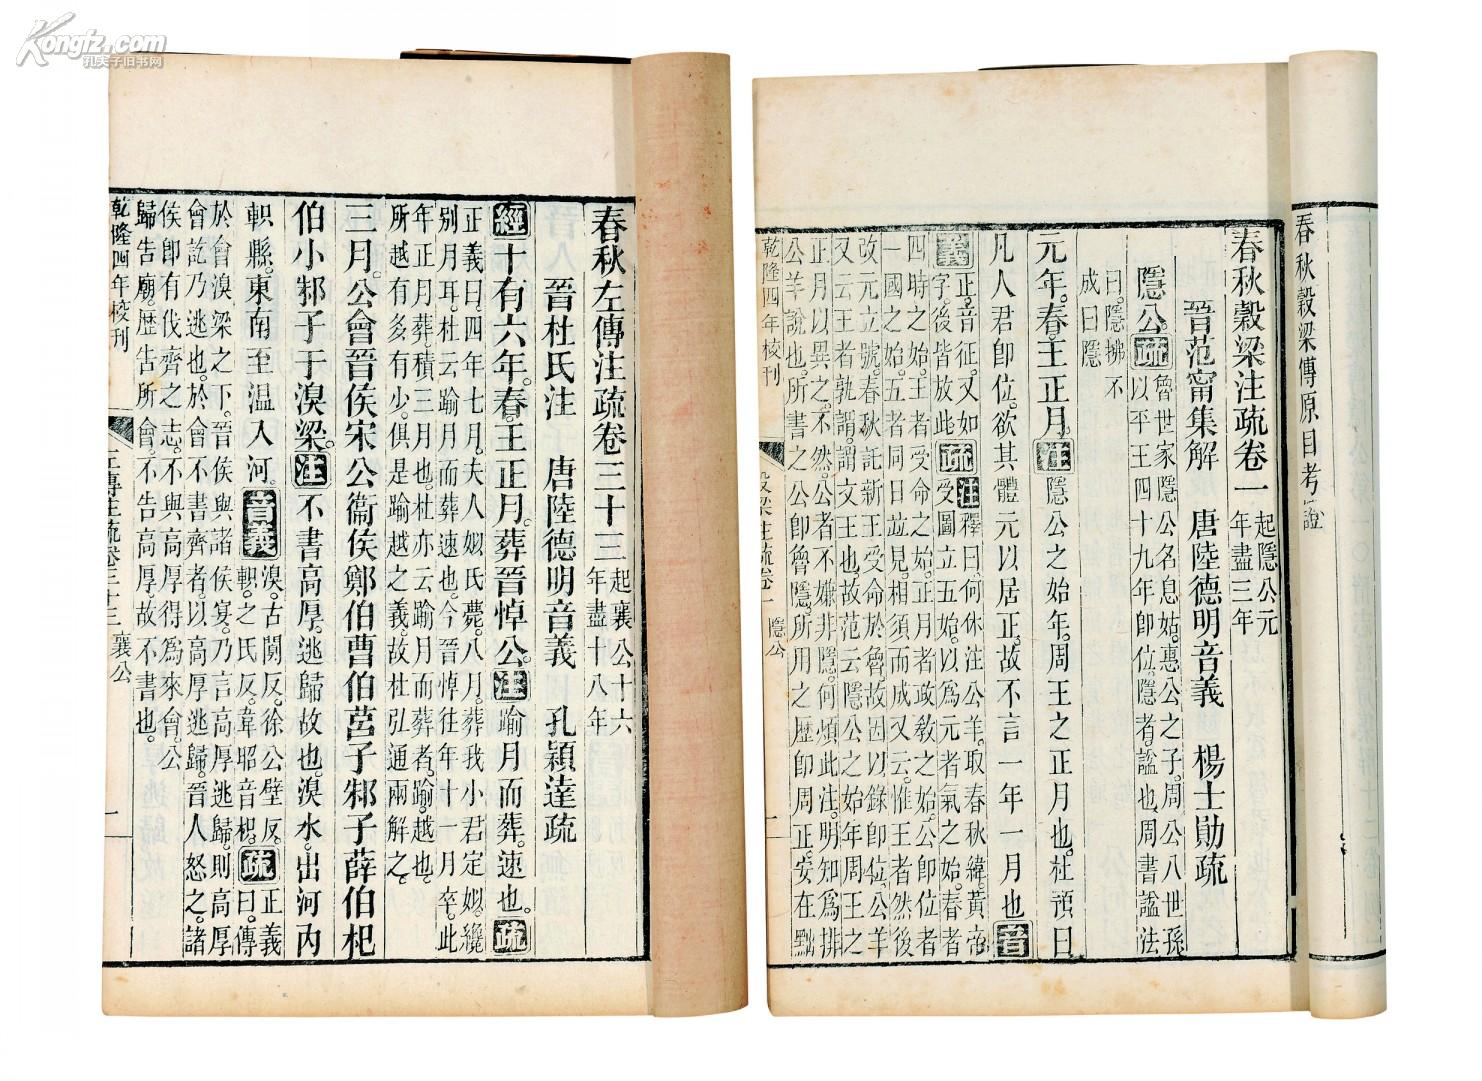 国学观揭示中国文化中最古老最具特色的学问